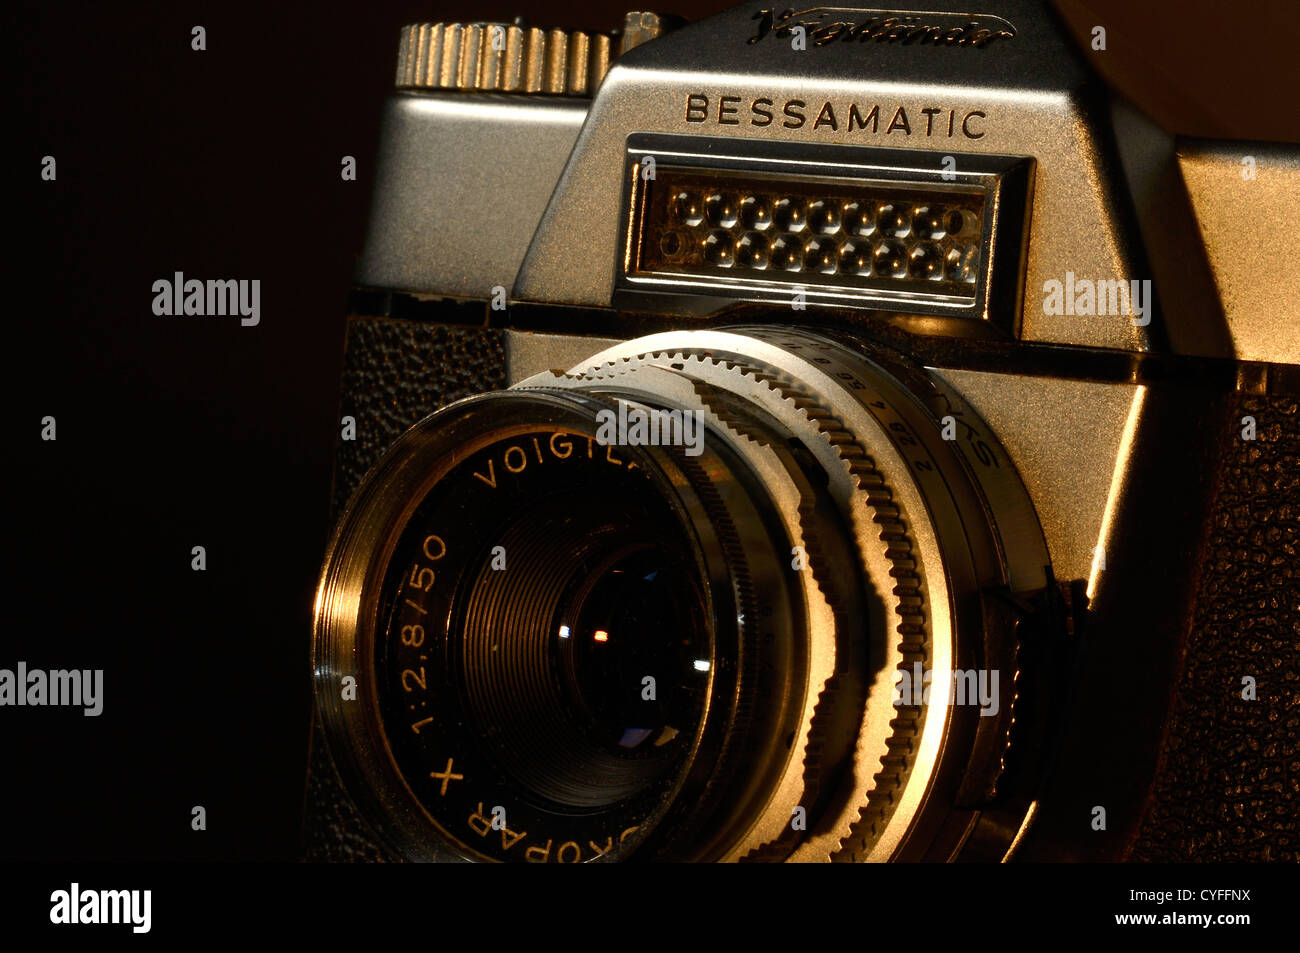 An old Voigtlander Bessamatic film camera Stock Photo